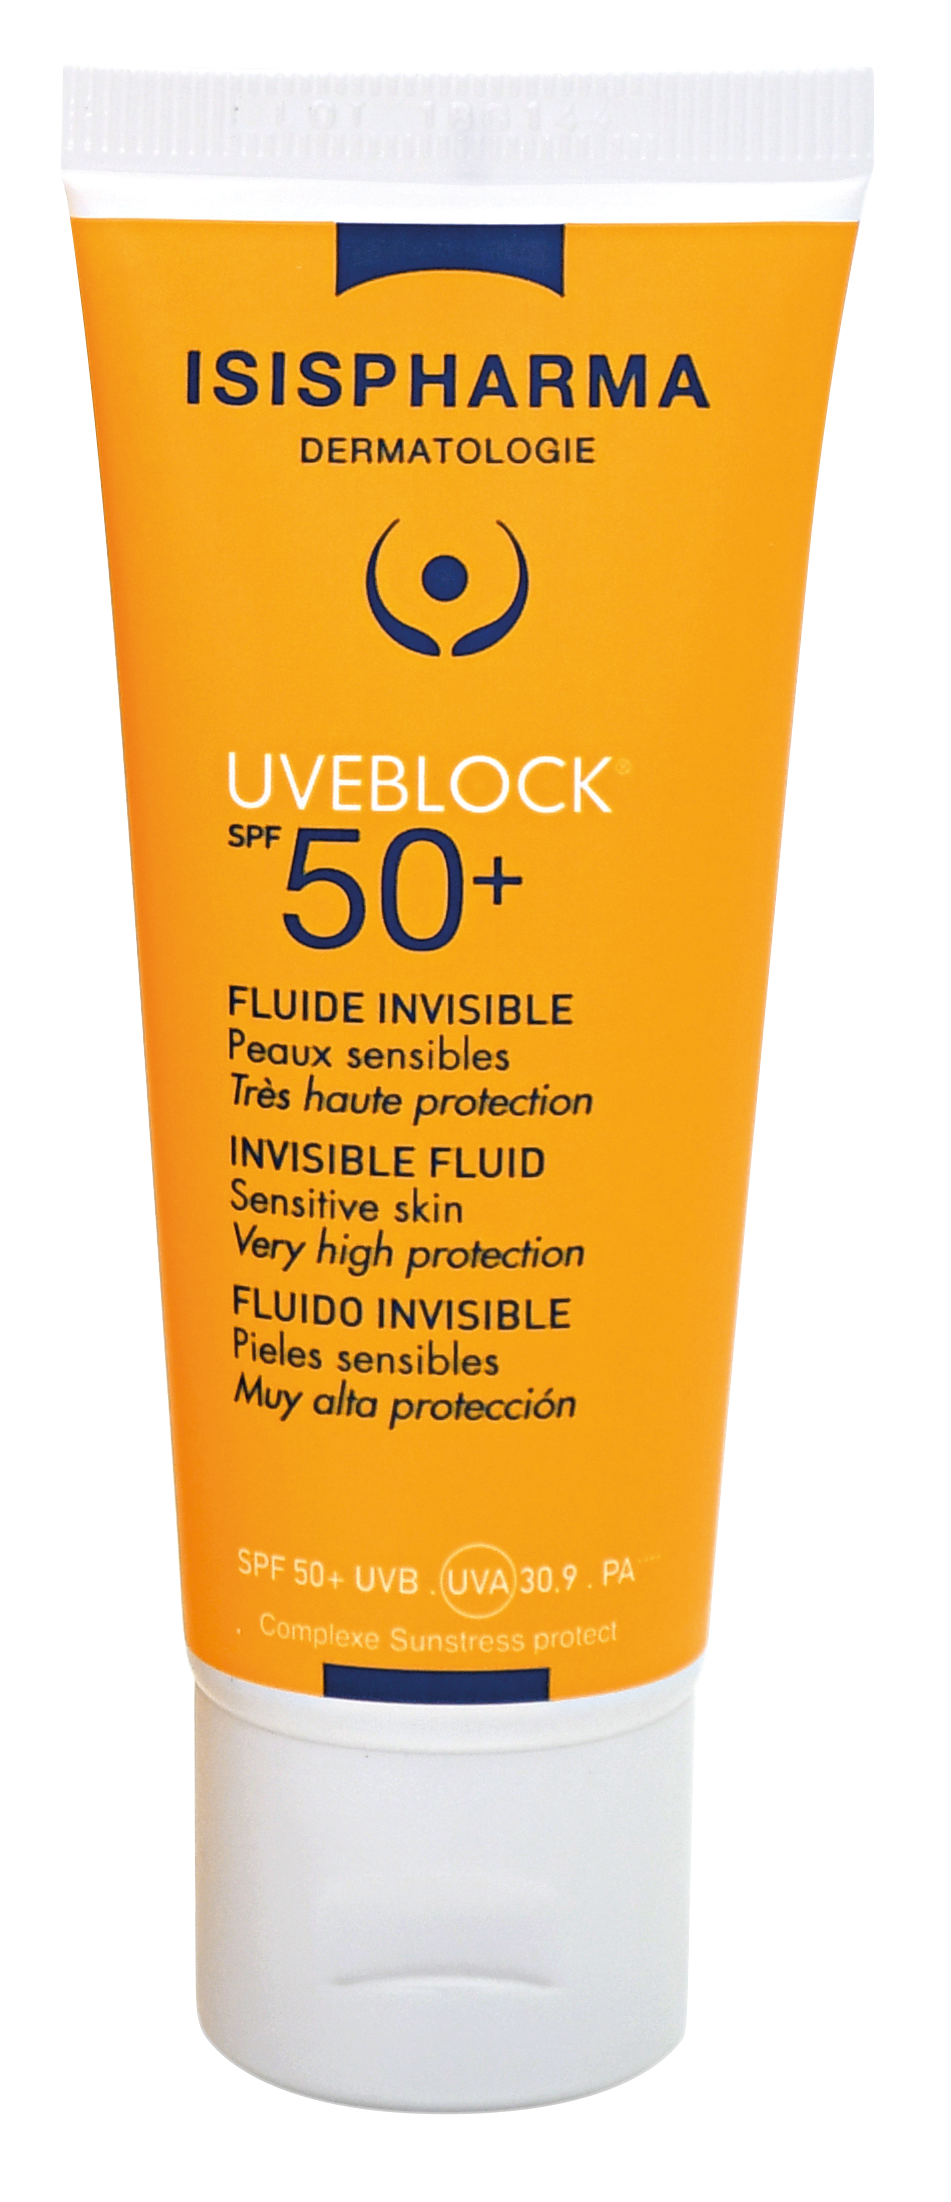 UVEBLOCK® SPF 50+ Fluid